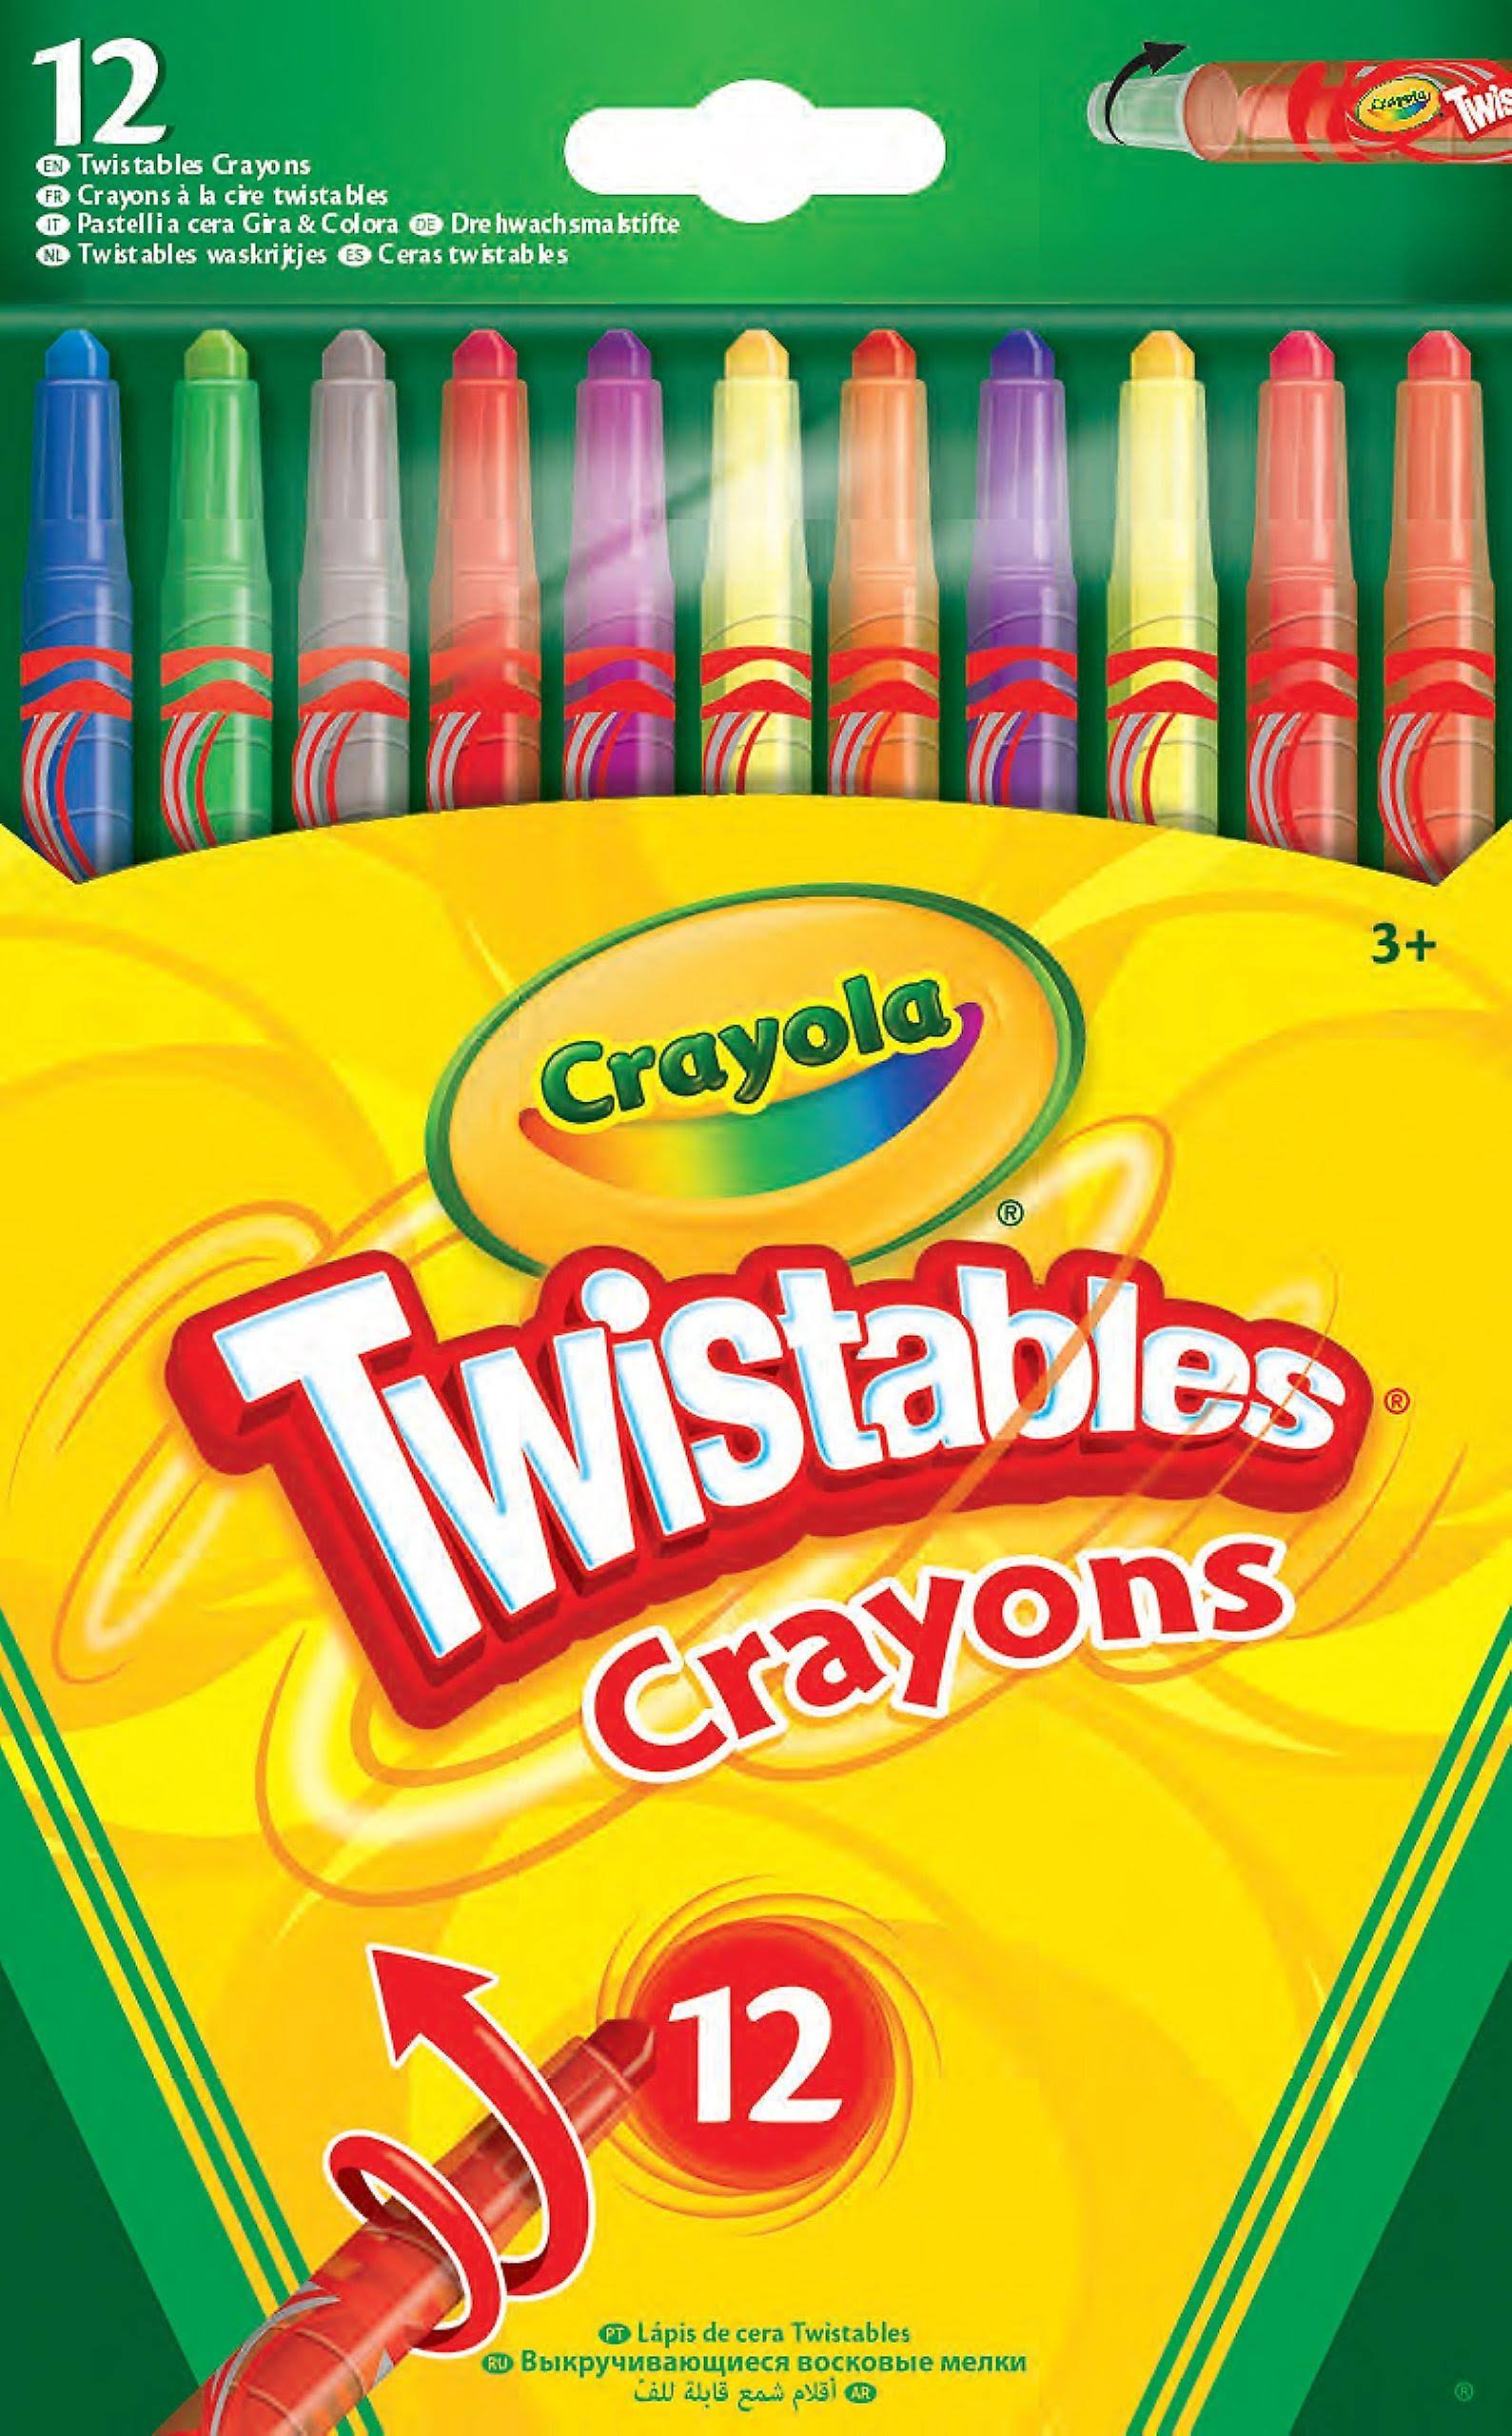 Crayola Twistable Crayons - 12pk